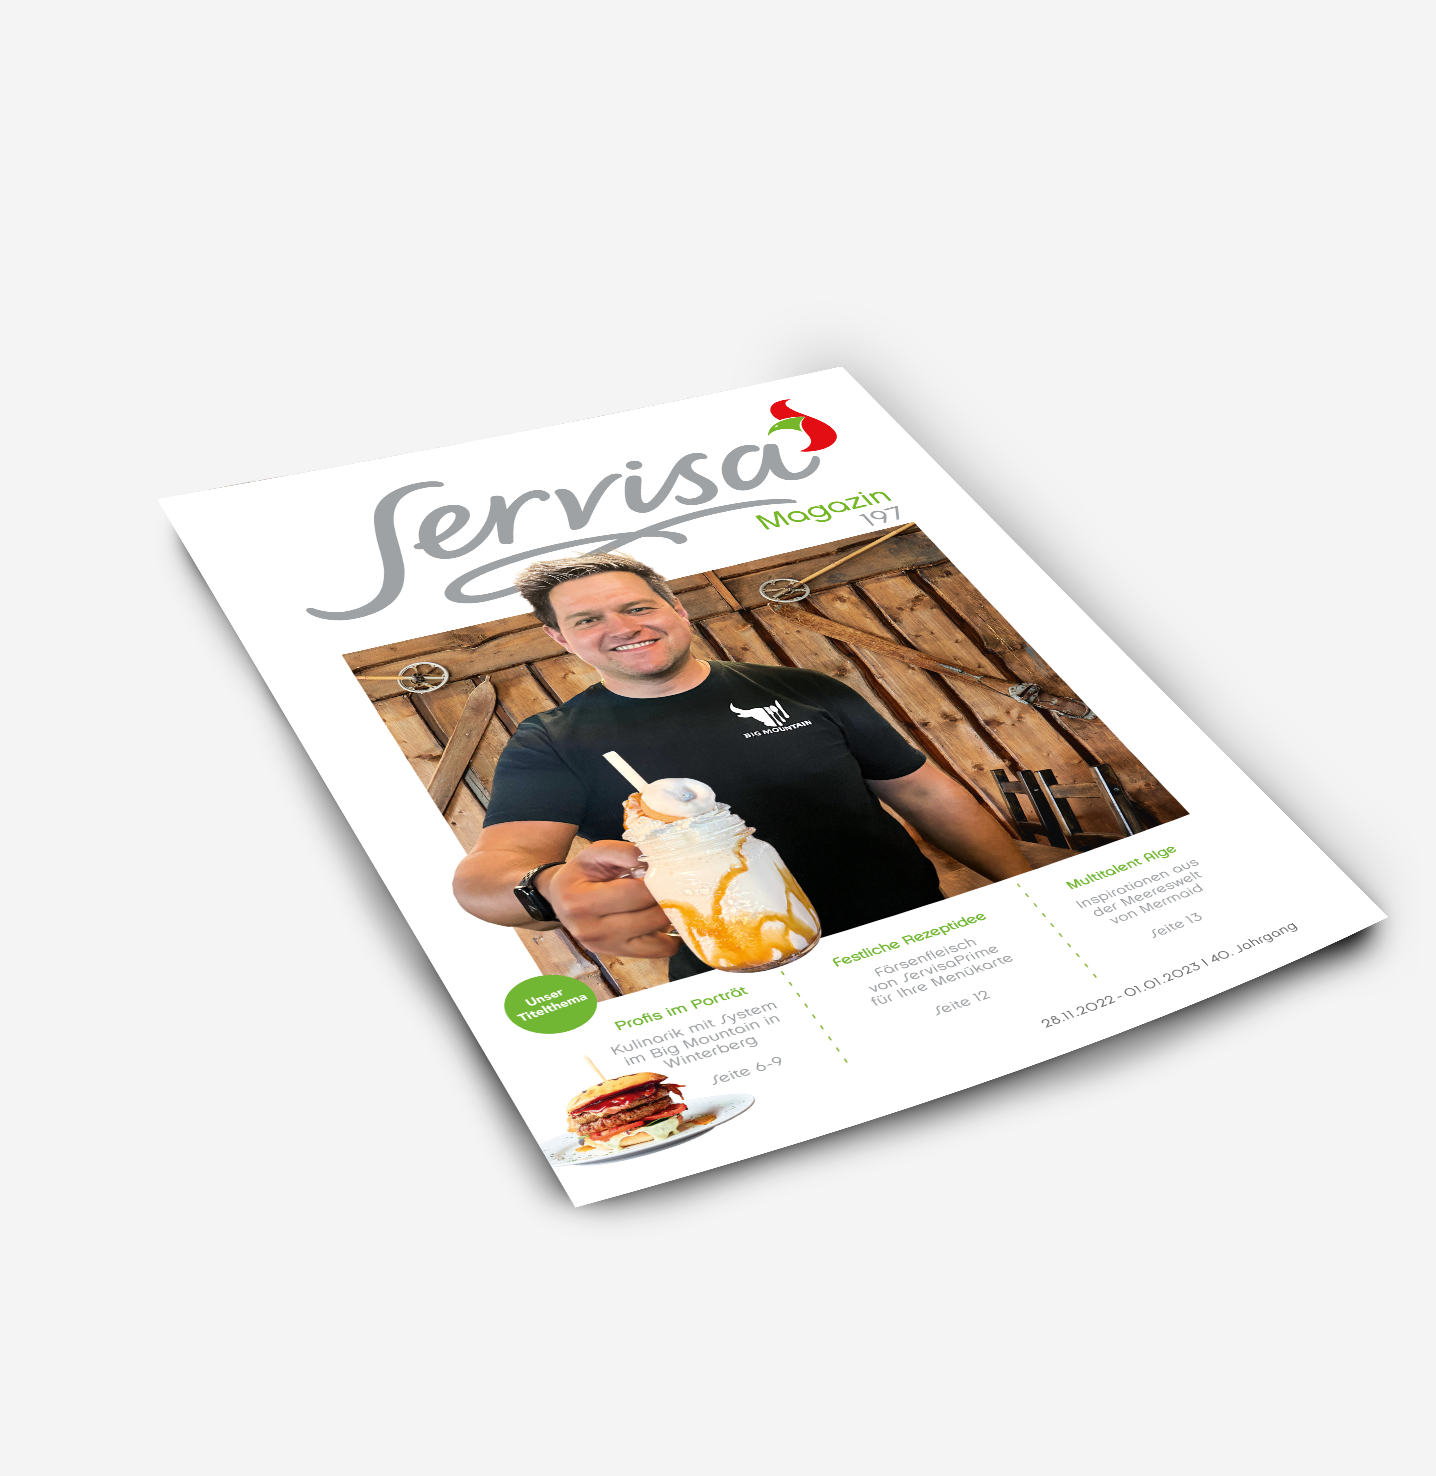 Servisa Magazin November 2022